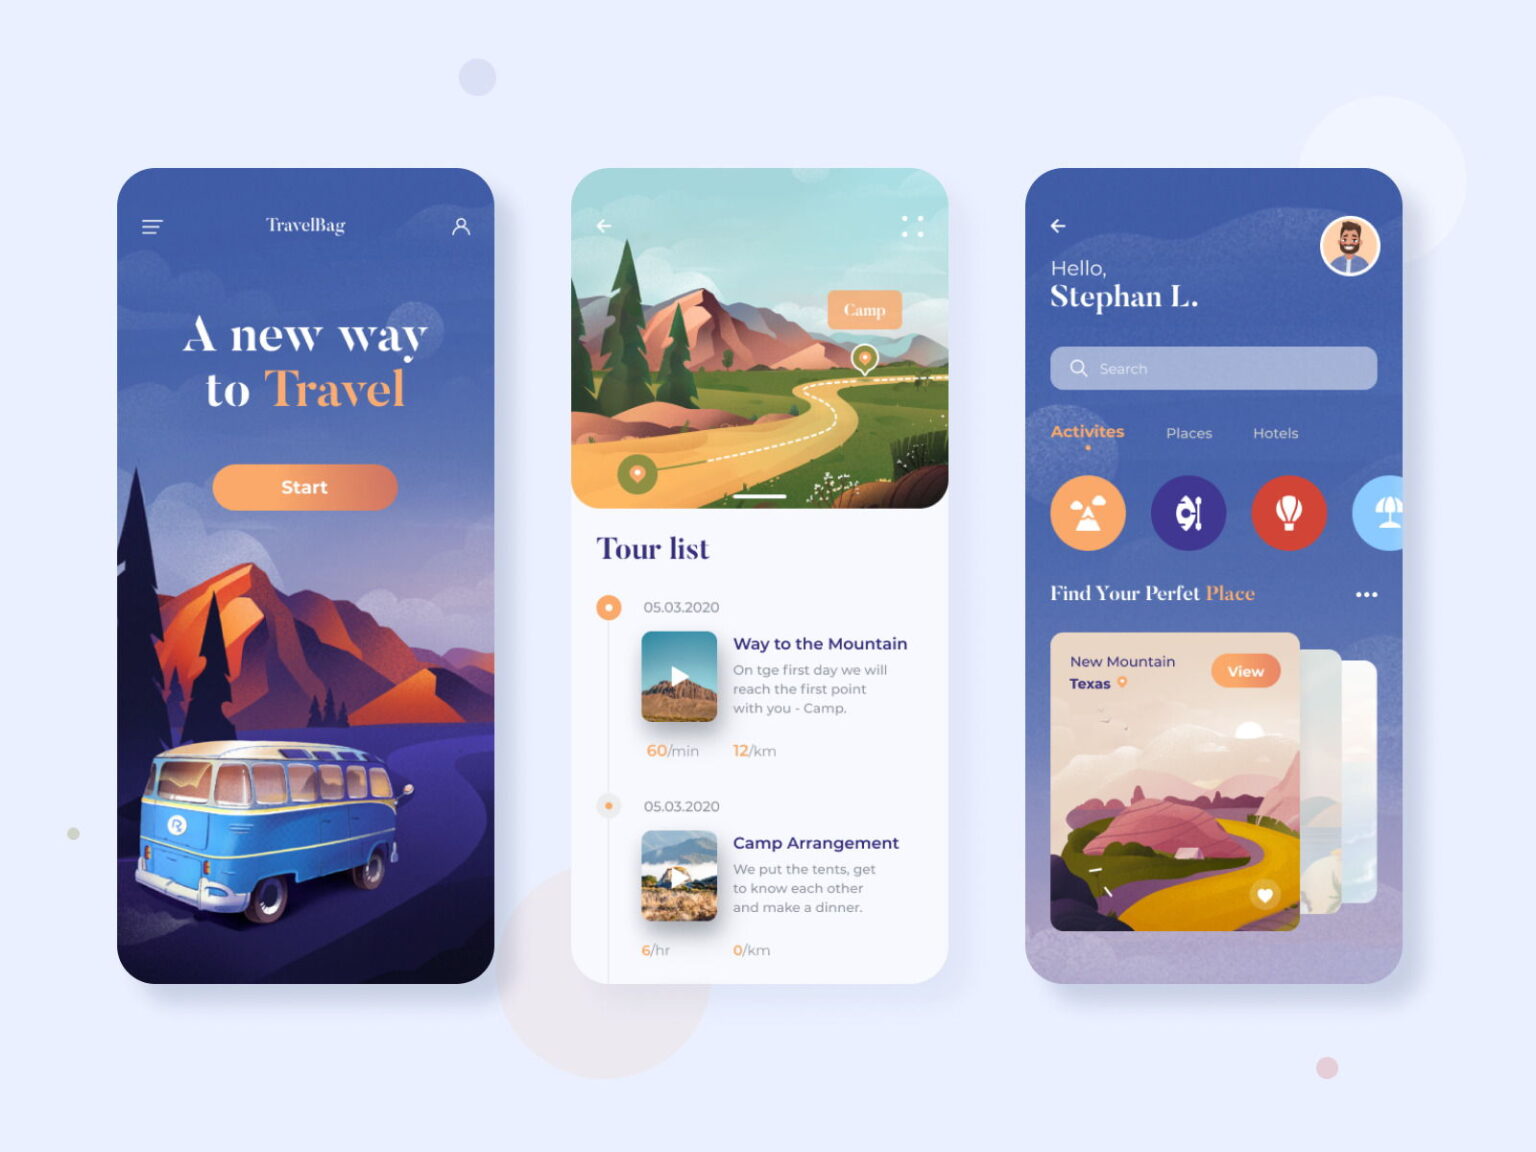 gmpte travel app